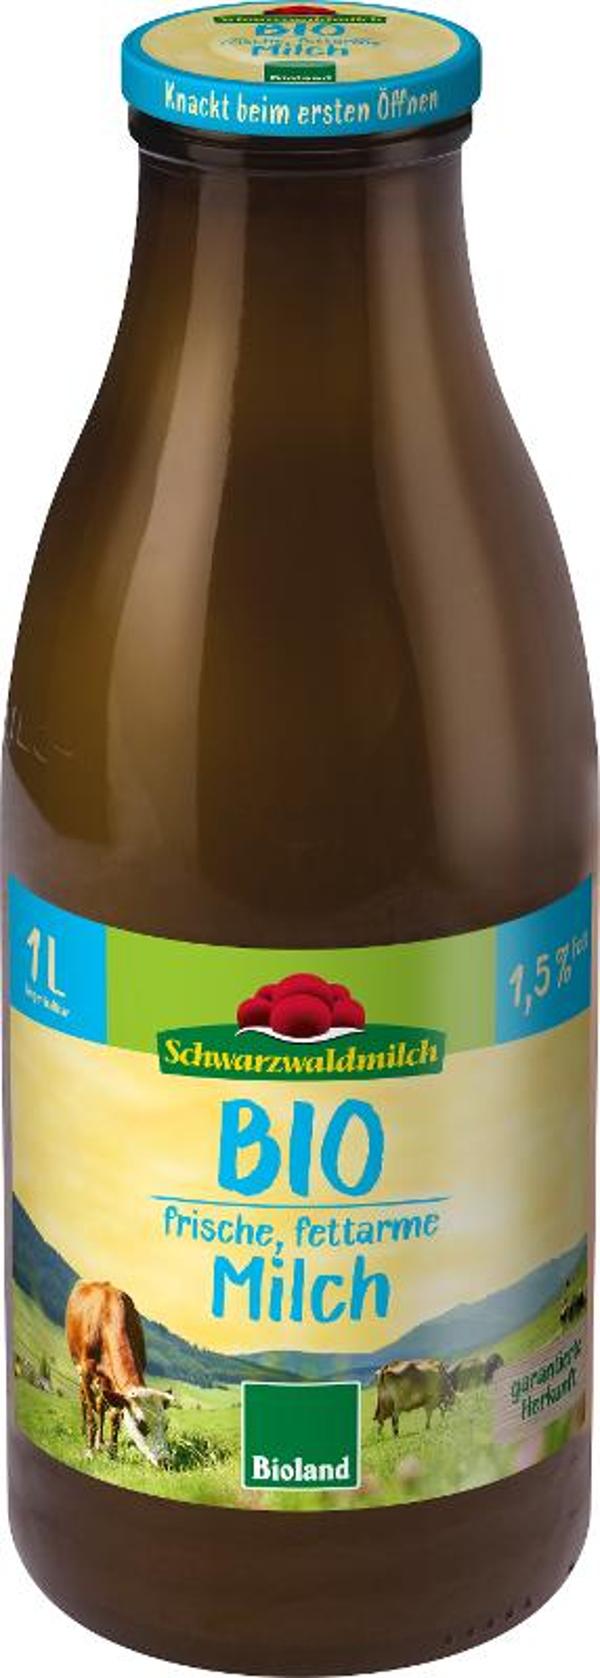 Produktfoto zu SWM Frischmilch 1,5% - Flasche